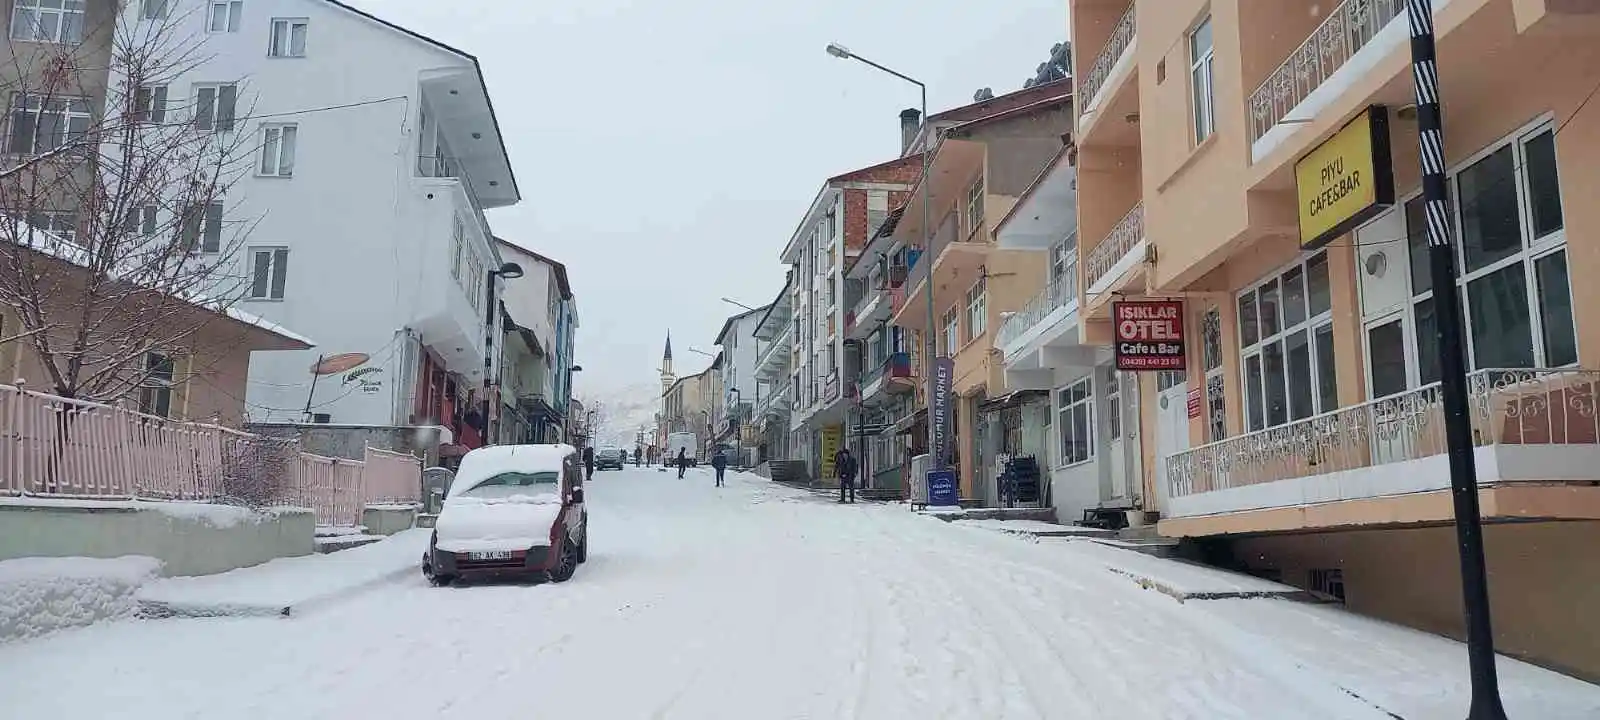 Son yılların en kurak kış mevsimini yaşayan Pülümür’de kar sevinci
